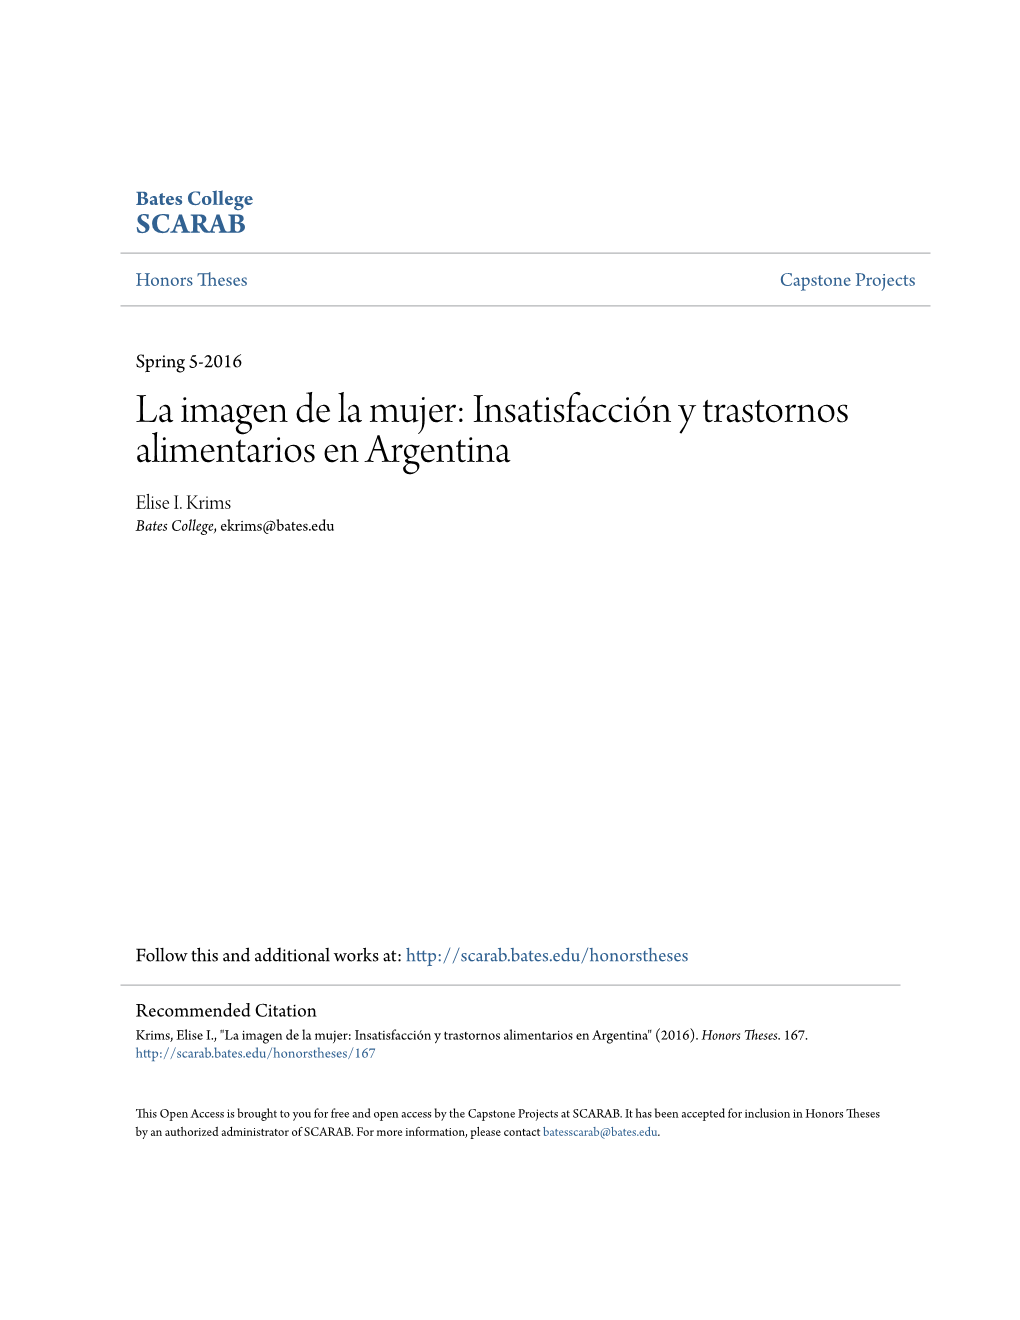 La Imagen De La Mujer: Insatisfacción Y Trastornos Alimentarios En Argentina Elise I